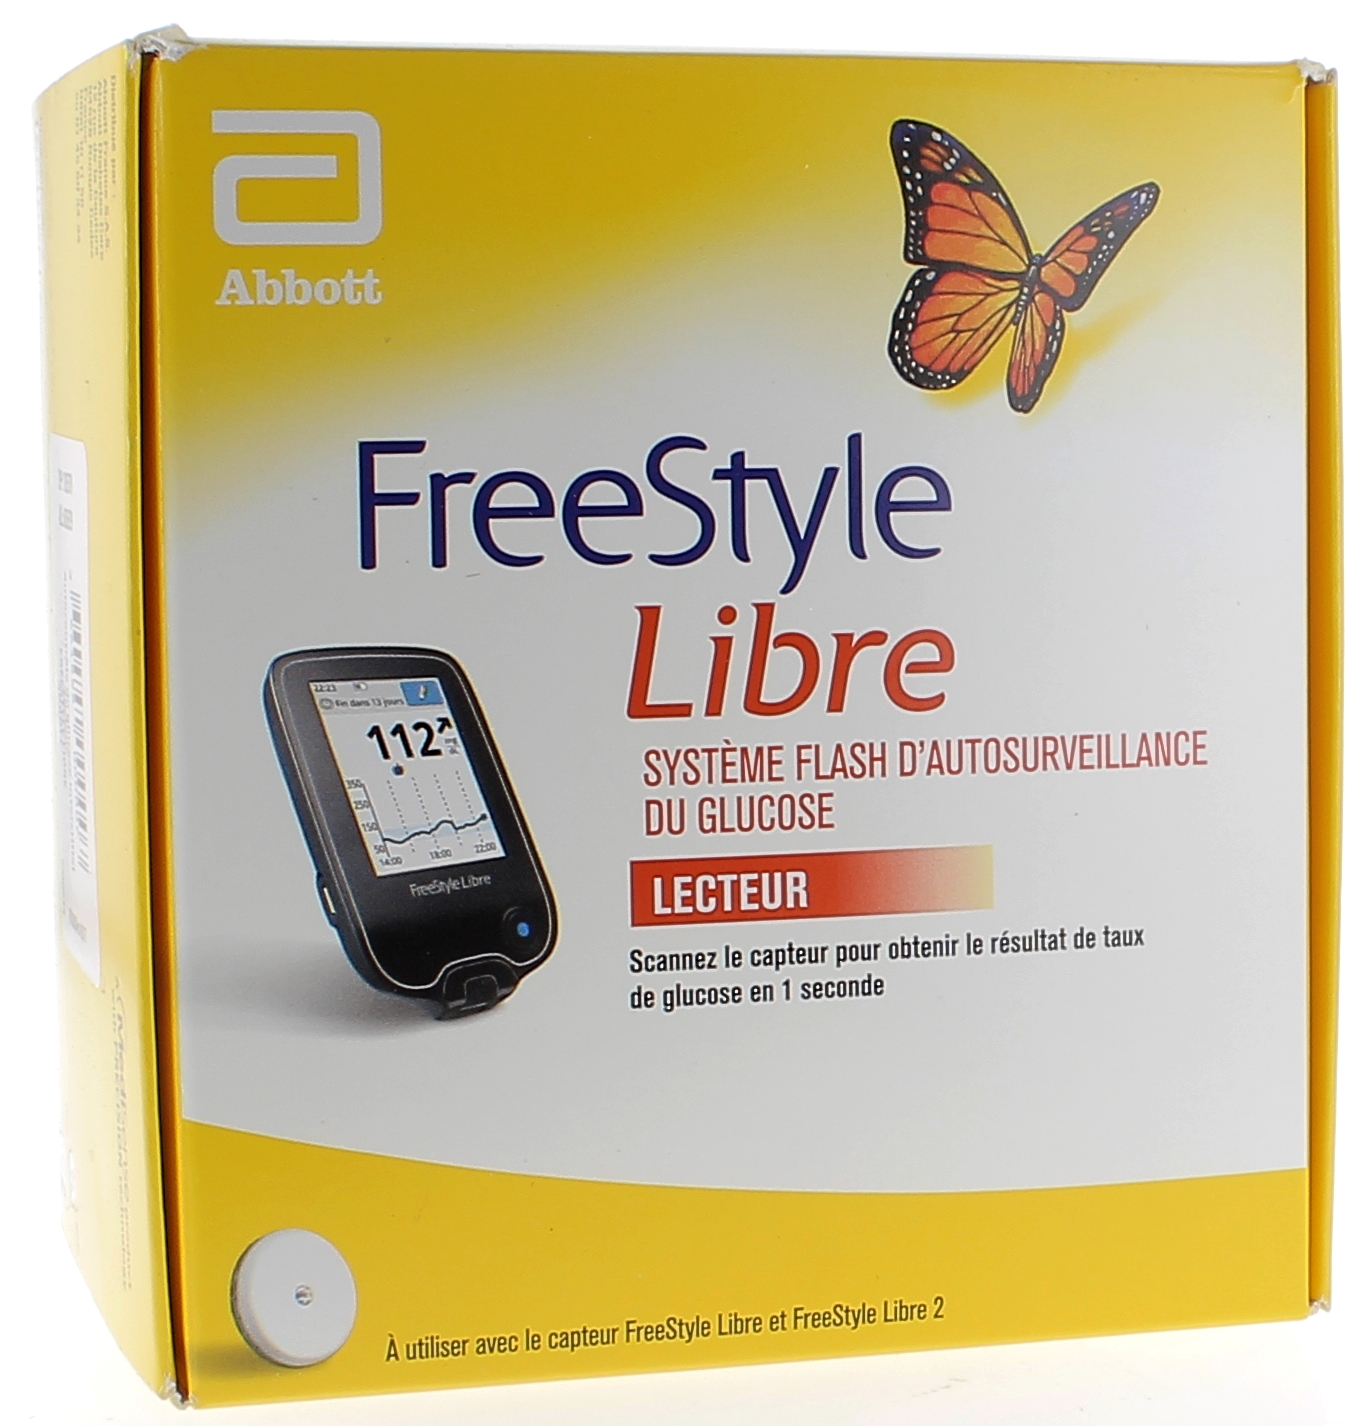 Freestyle libre lecteur de Glucose Abbott - 1 lecteur